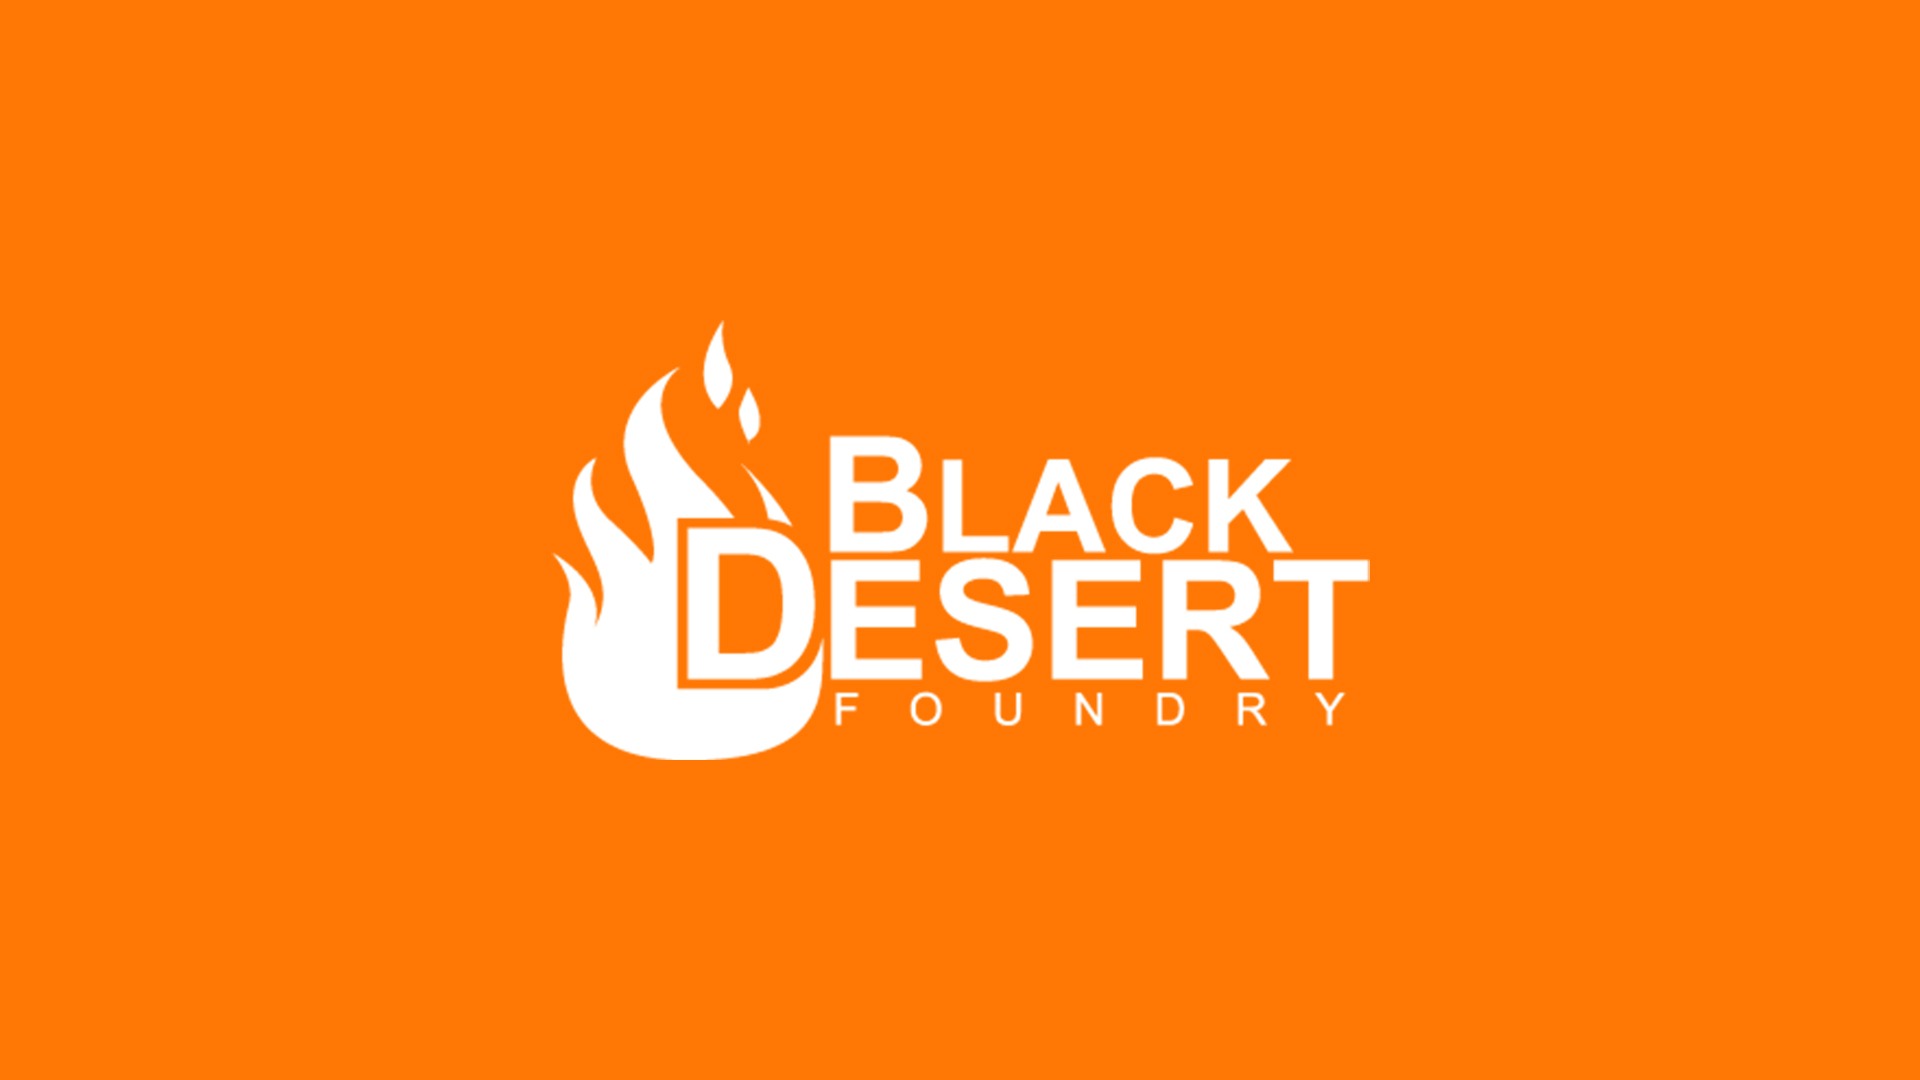 Black-Desert-Foundry-logo